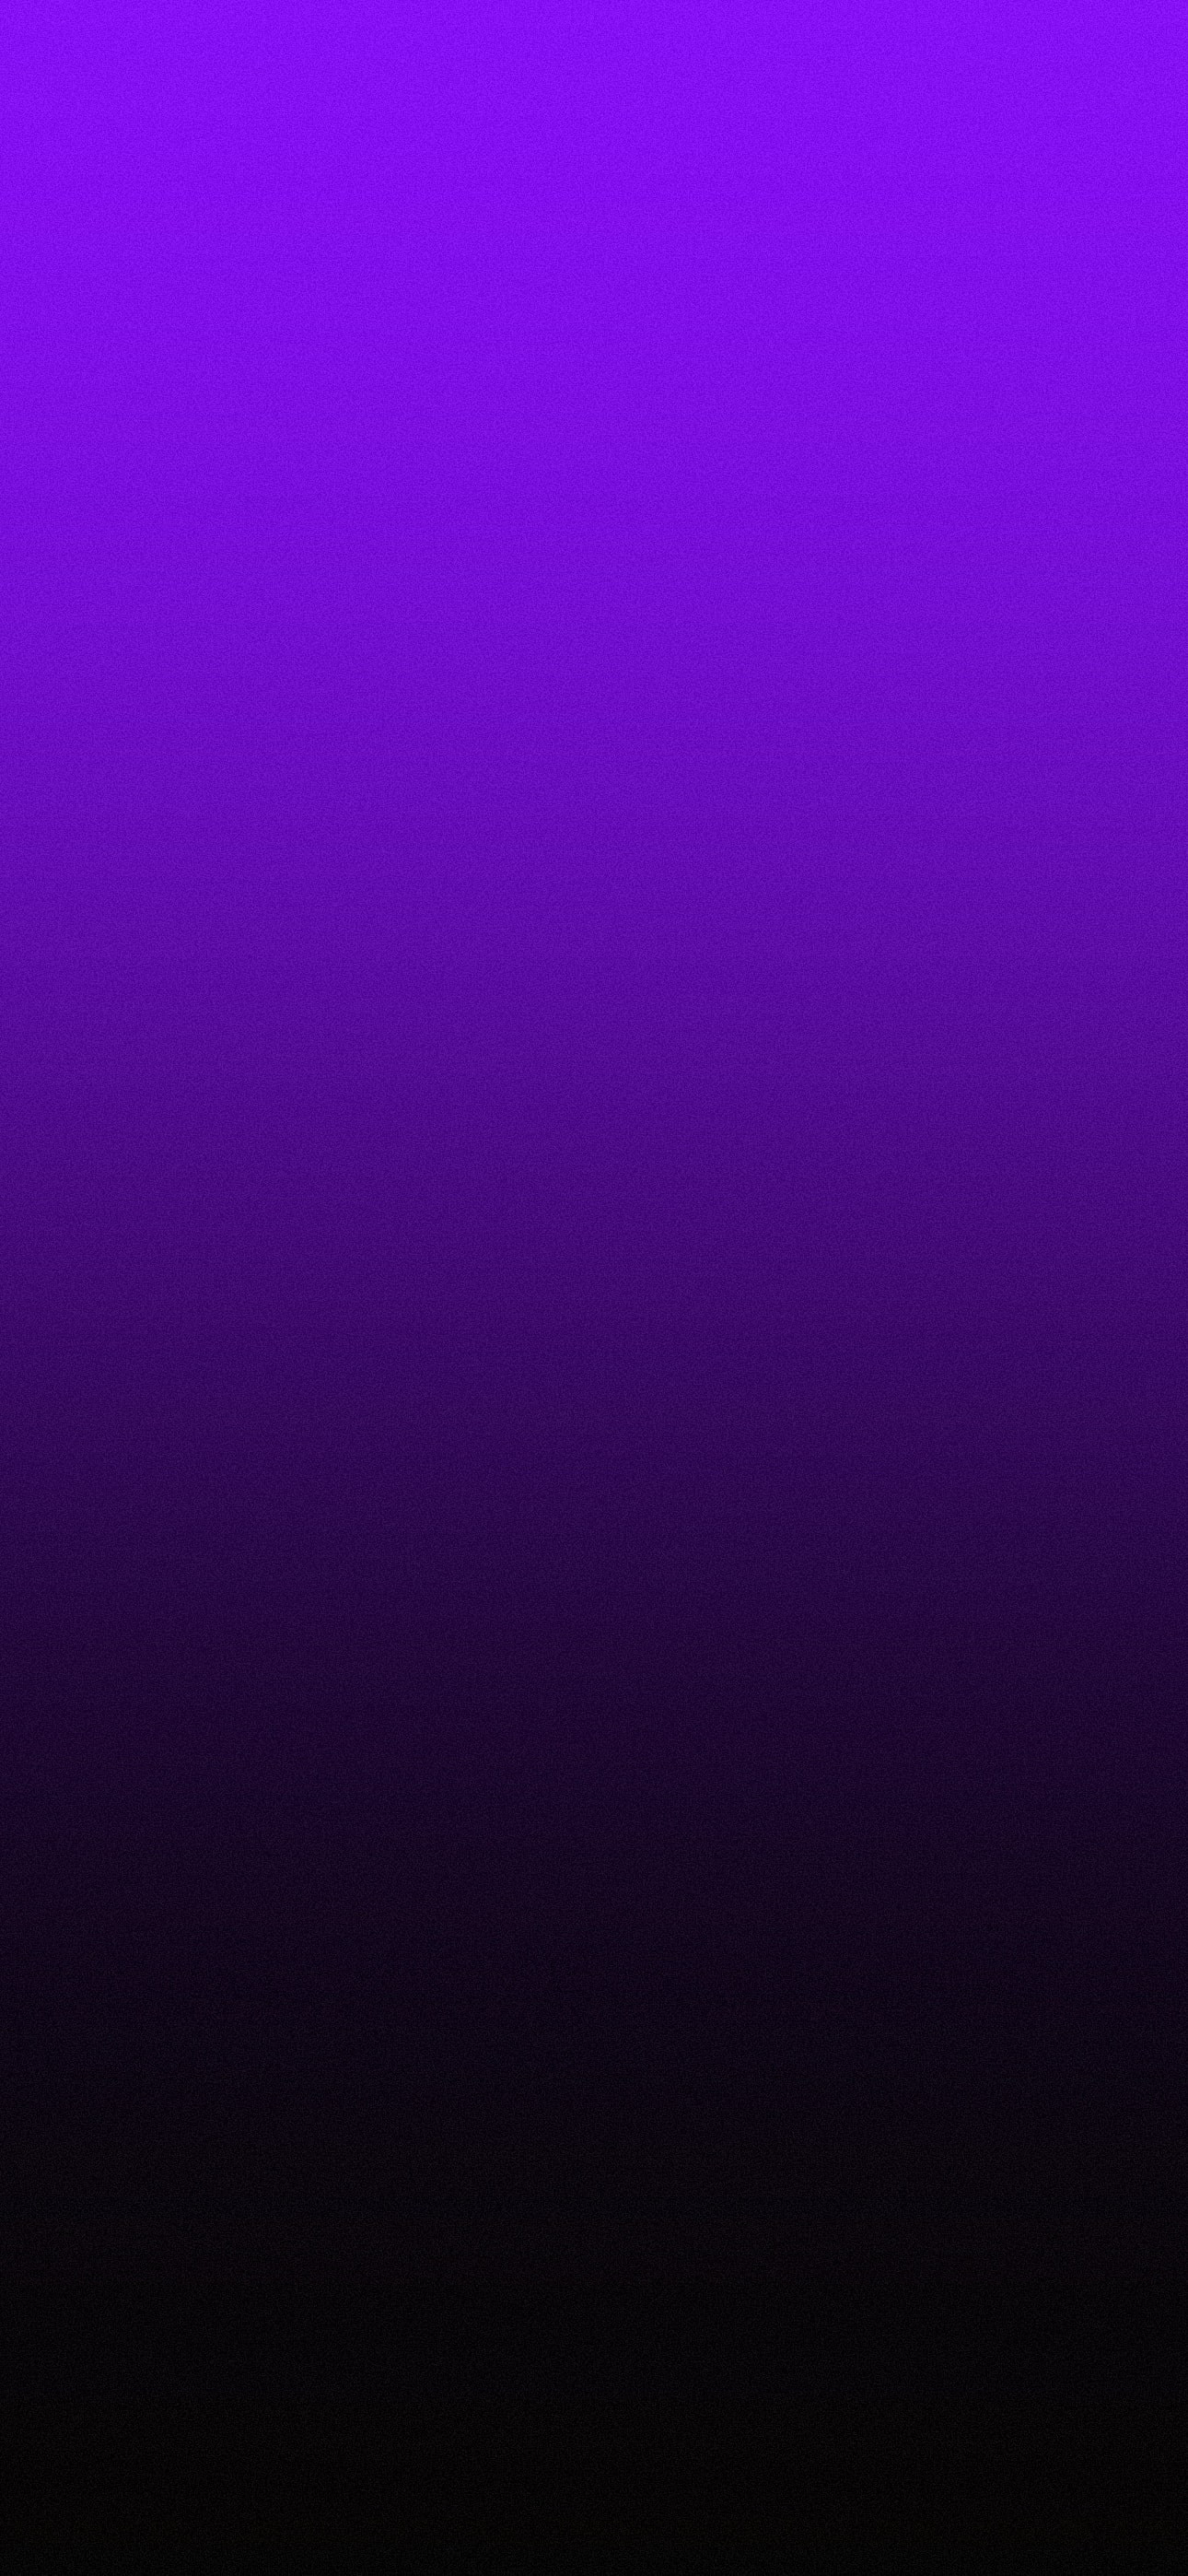 purple_black